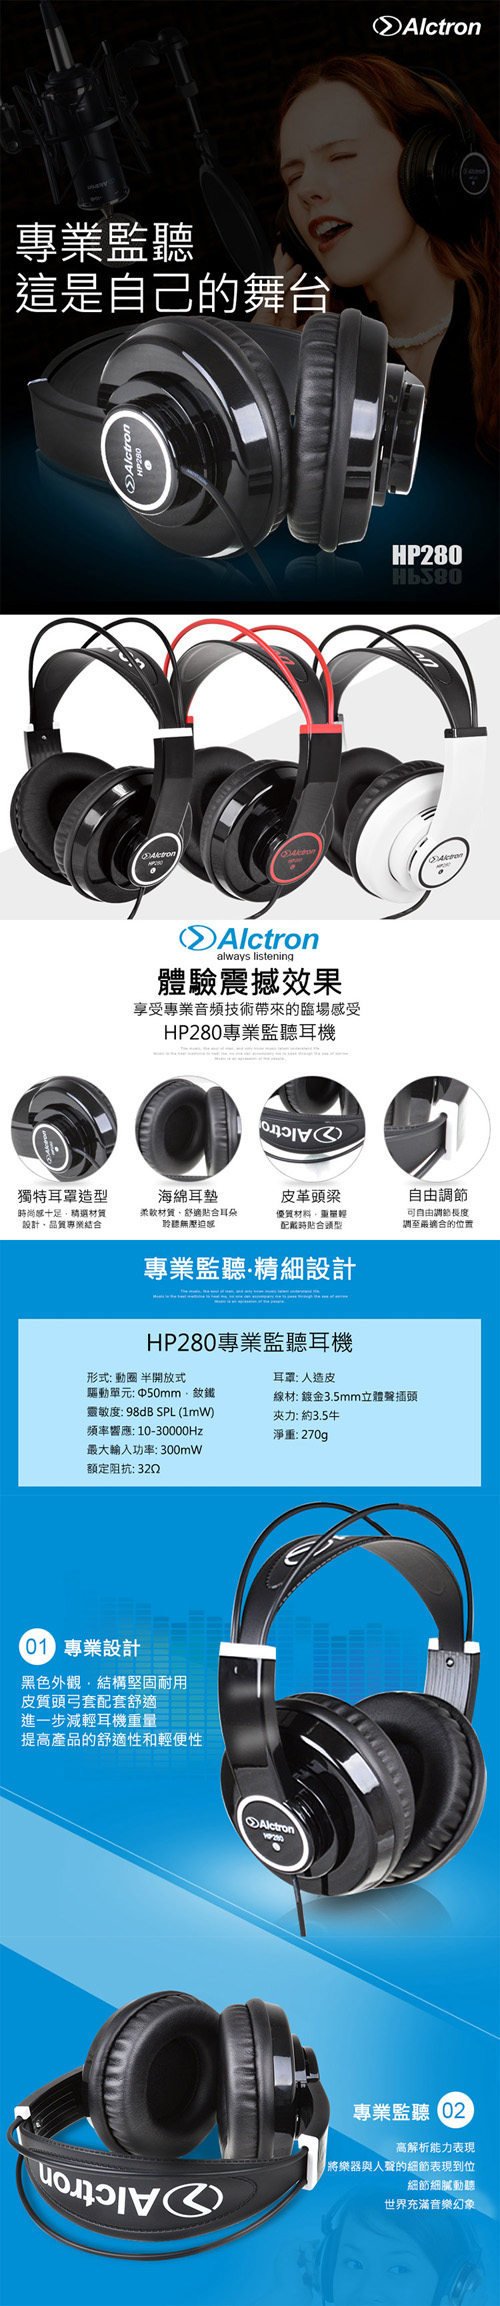 【ALCTRON】HP280 專業耳罩式耳機 紅色線條耀岩黑色款(享受專業音頻技術帶來的臨場感受)